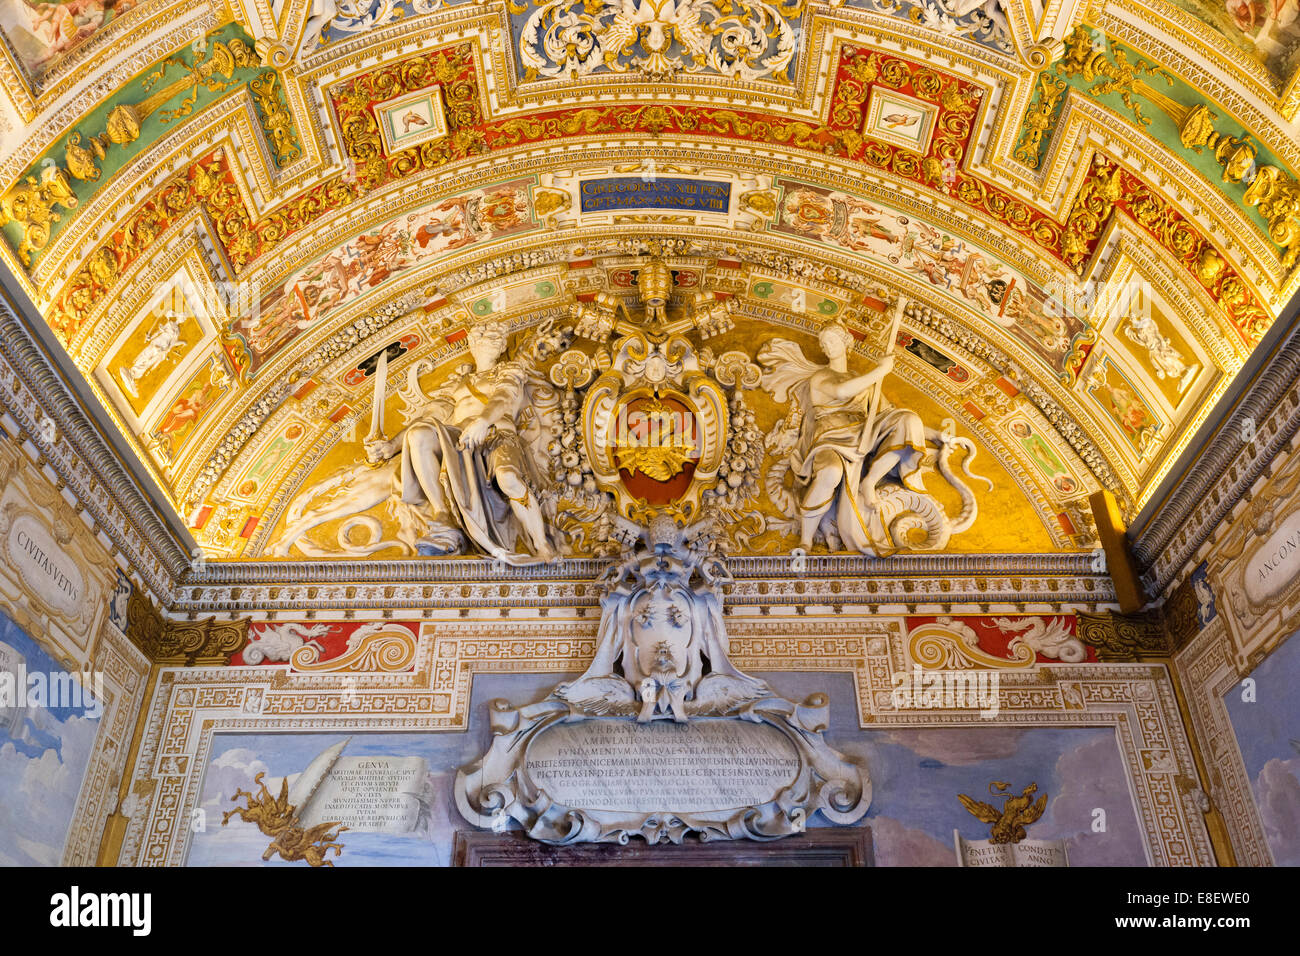 Couche de chauffe du Pape Urbain VIII et stuc plafond dans la Galleria delle Carte Ville, Musées du Vatican, Vatican, Rome Banque D'Images